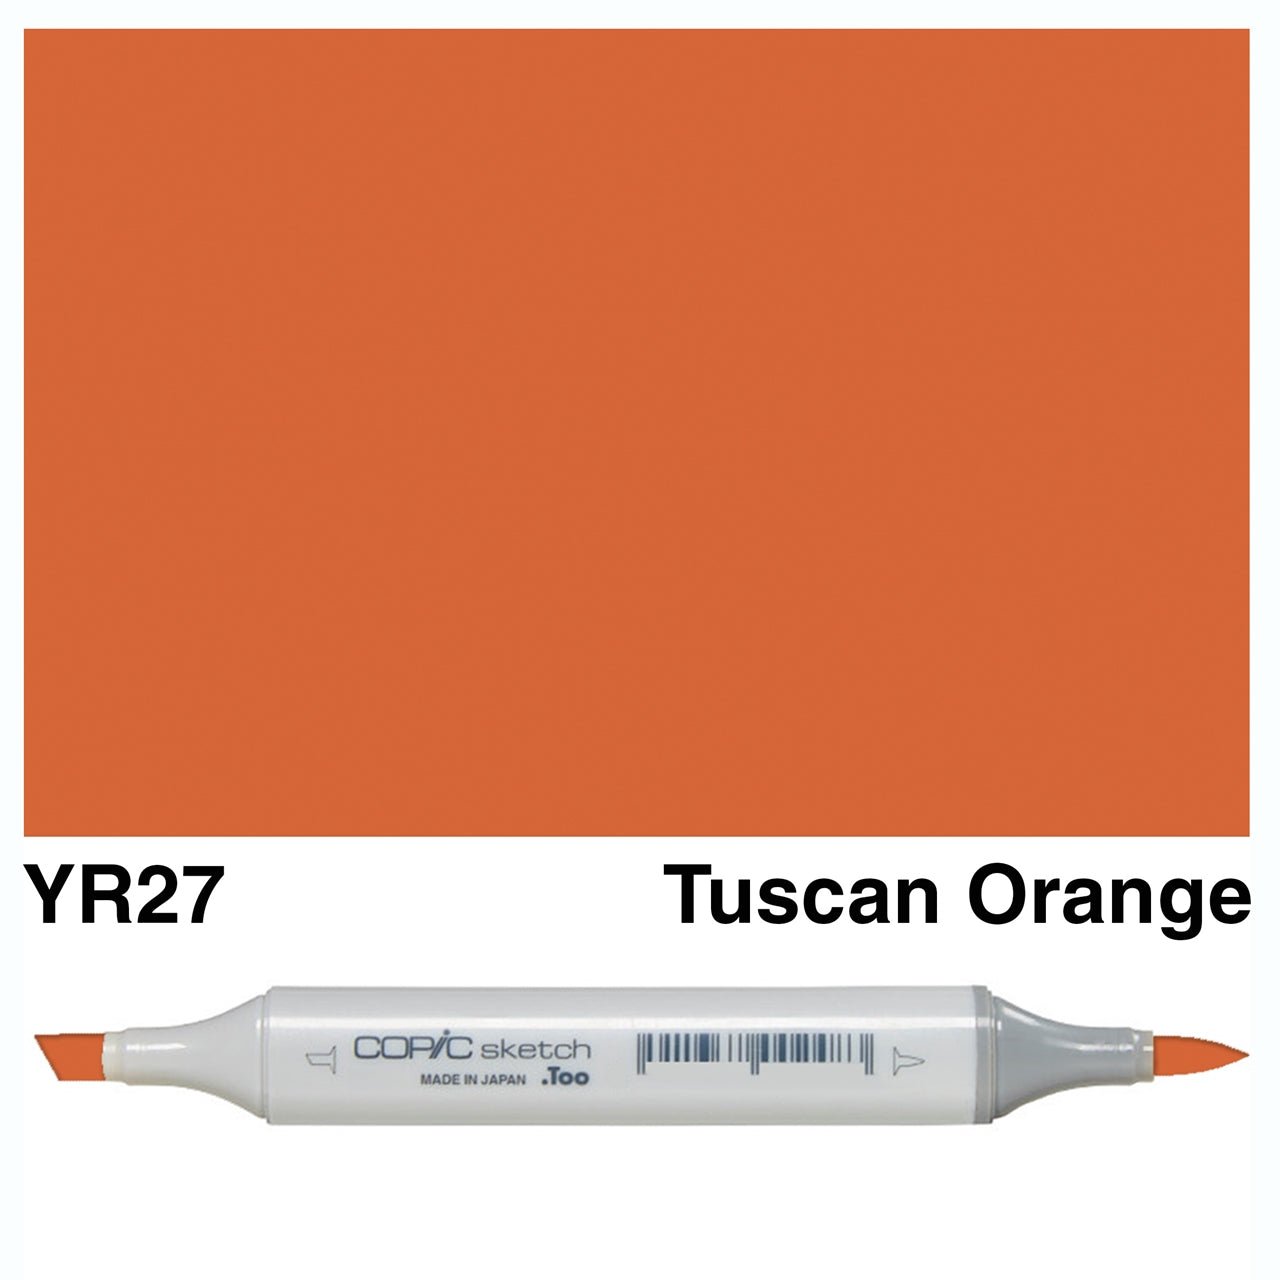 Copic Sketch YR27 Tuscan Orange - theartshop.com.au